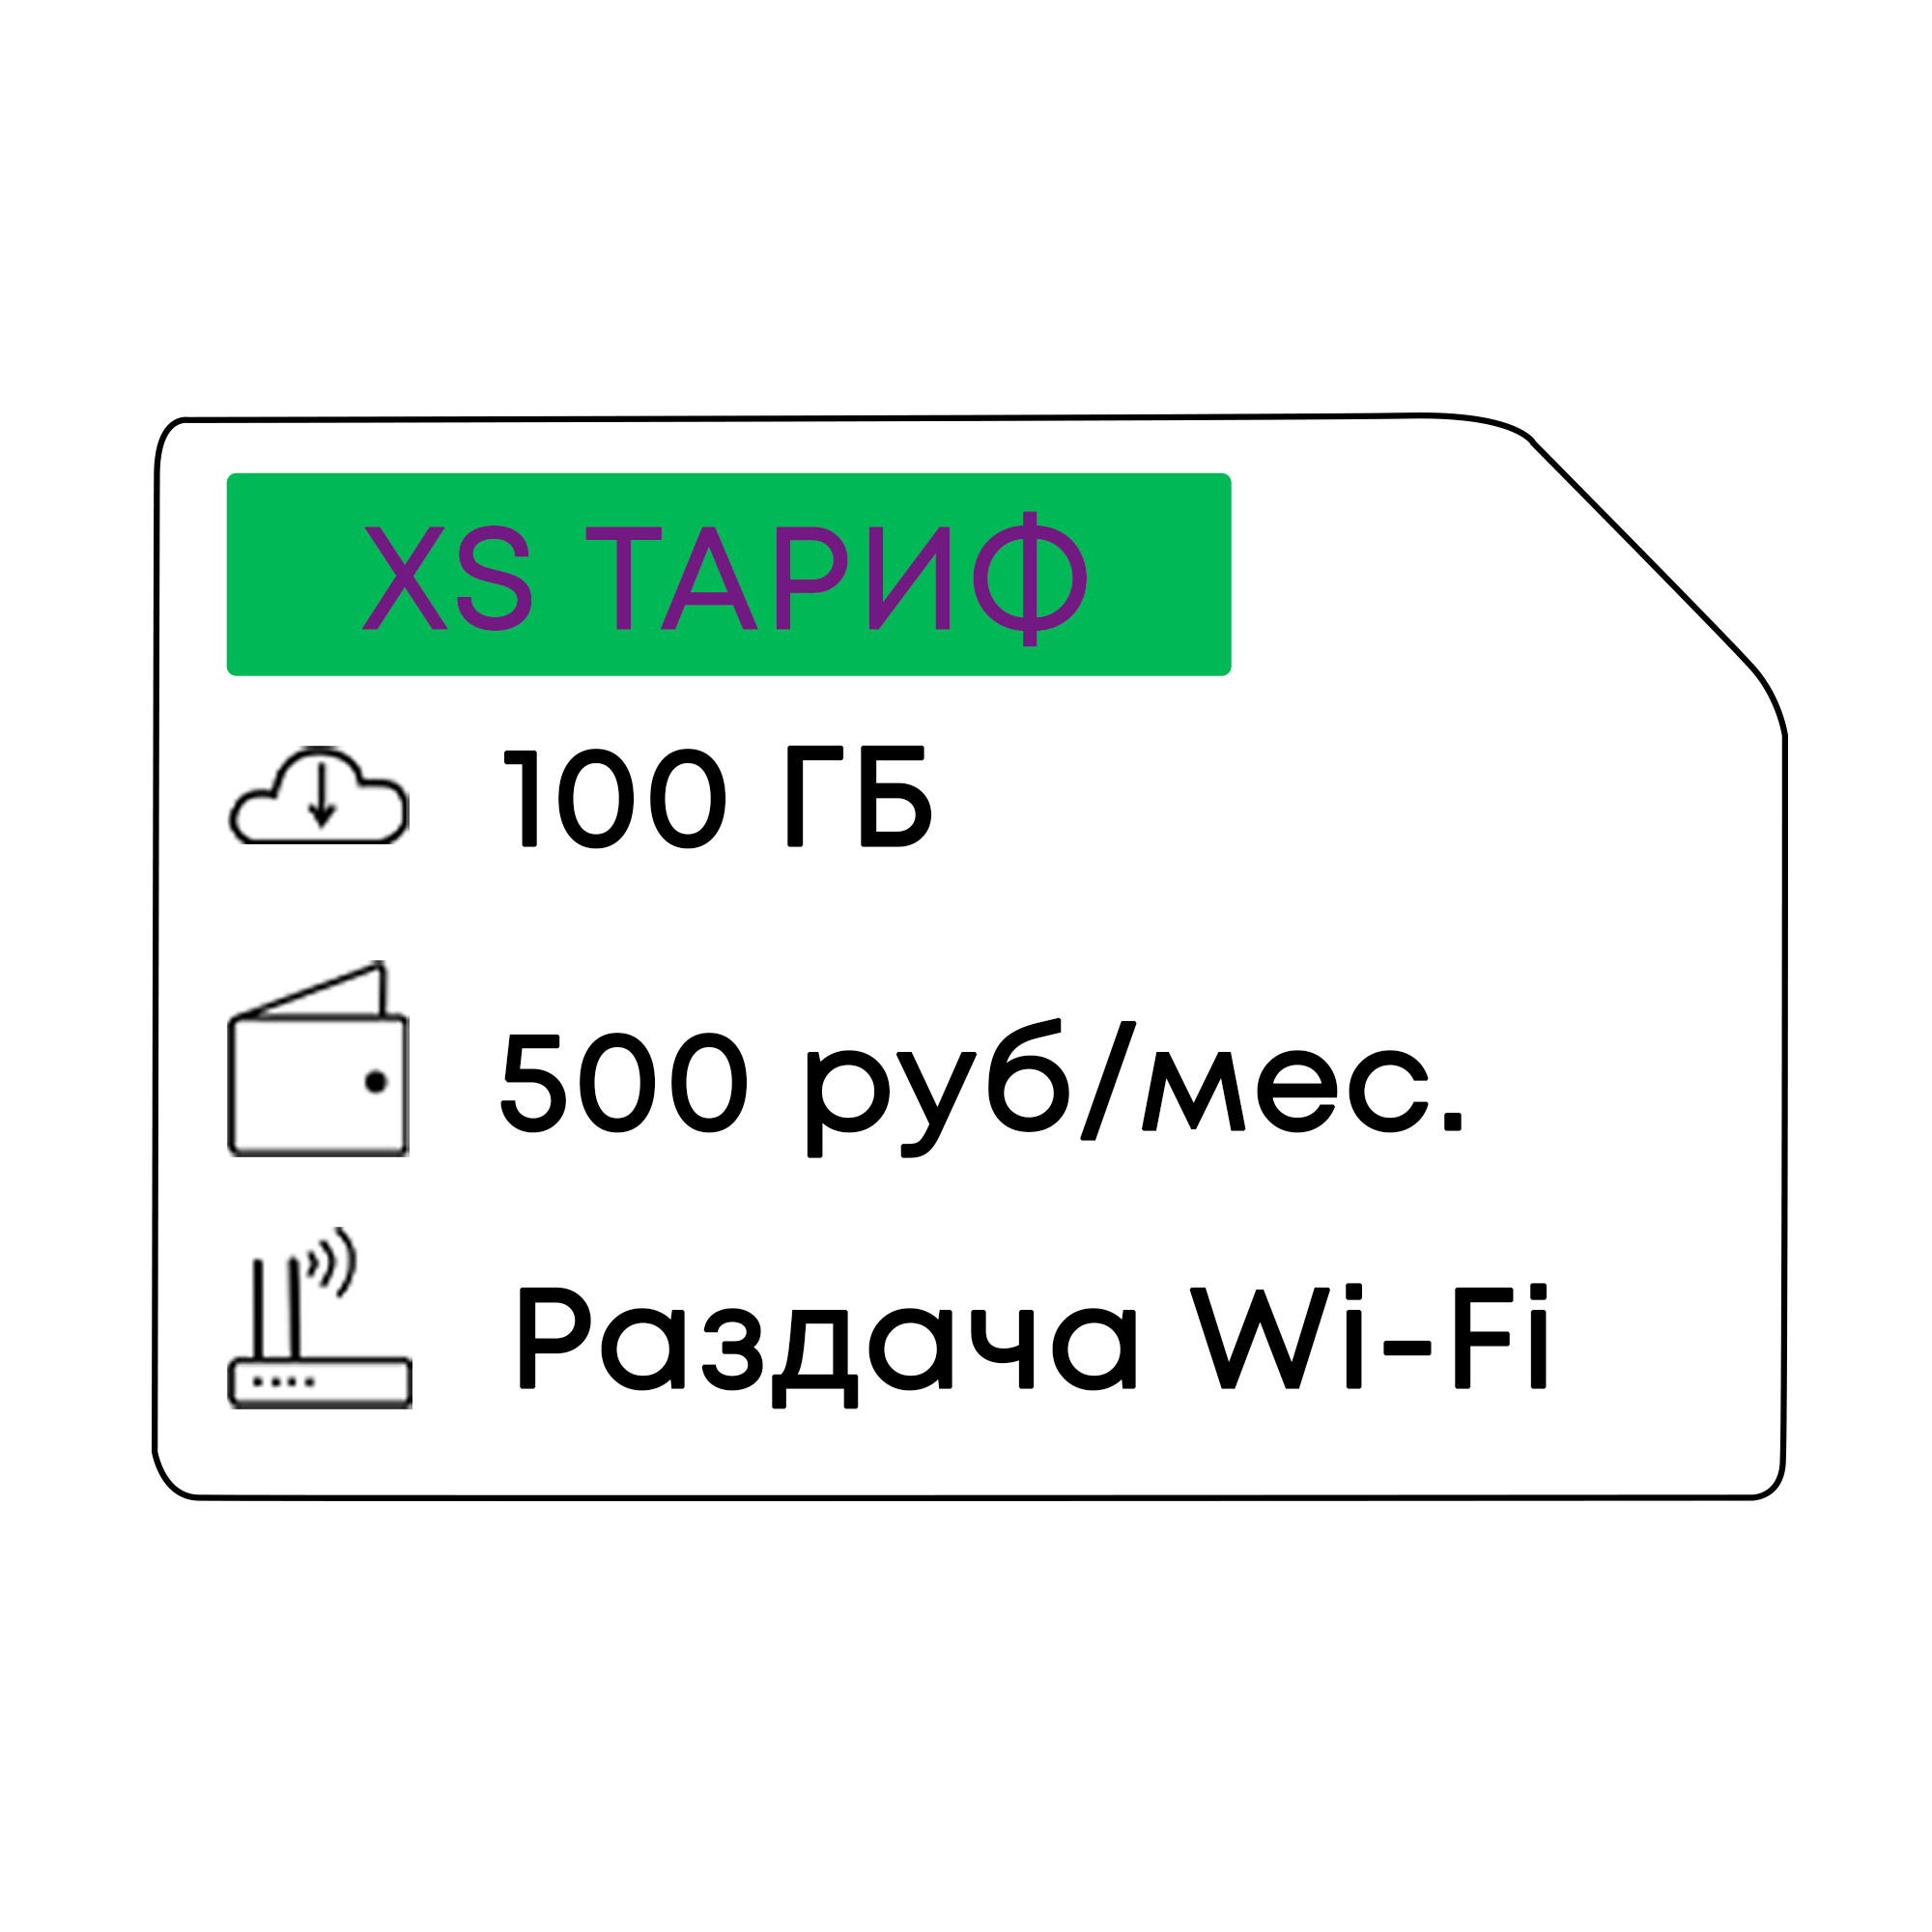 4G B3 Модем с Wi-Fi + мега 500